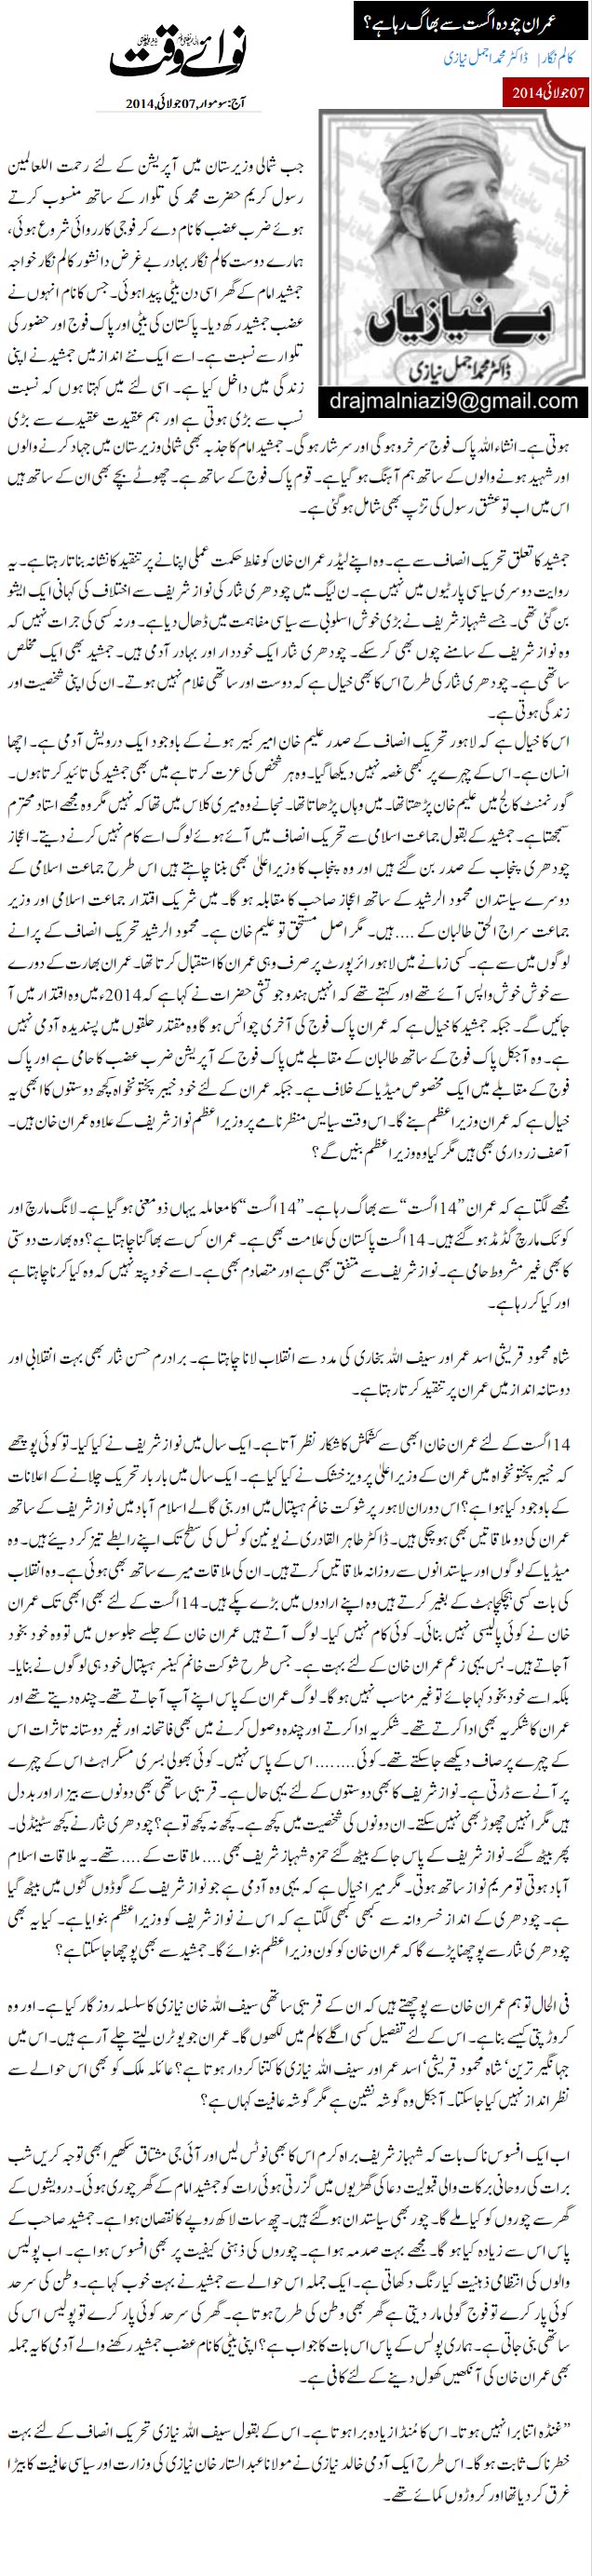 Minhaj-ul-Quran  Print Media Coverage Daily Nawa i Waqt - Dr Muhammad Ajmal Niazi